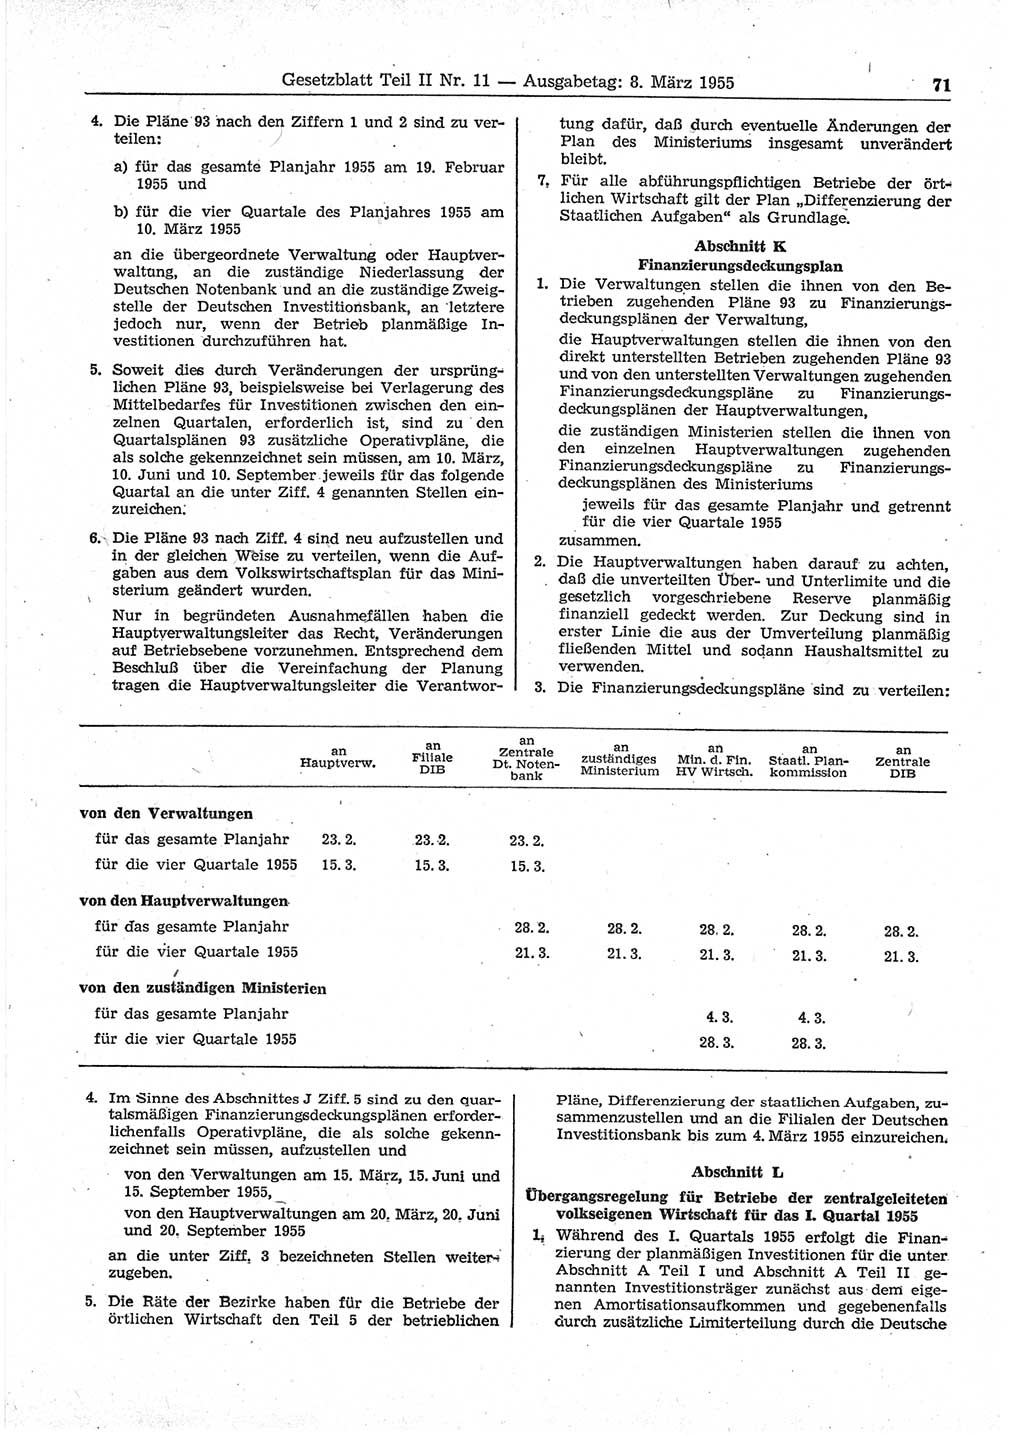 Gesetzblatt (GBl.) der Deutschen Demokratischen Republik (DDR) Teil ⅠⅠ 1955, Seite 71 (GBl. DDR ⅠⅠ 1955, S. 71)